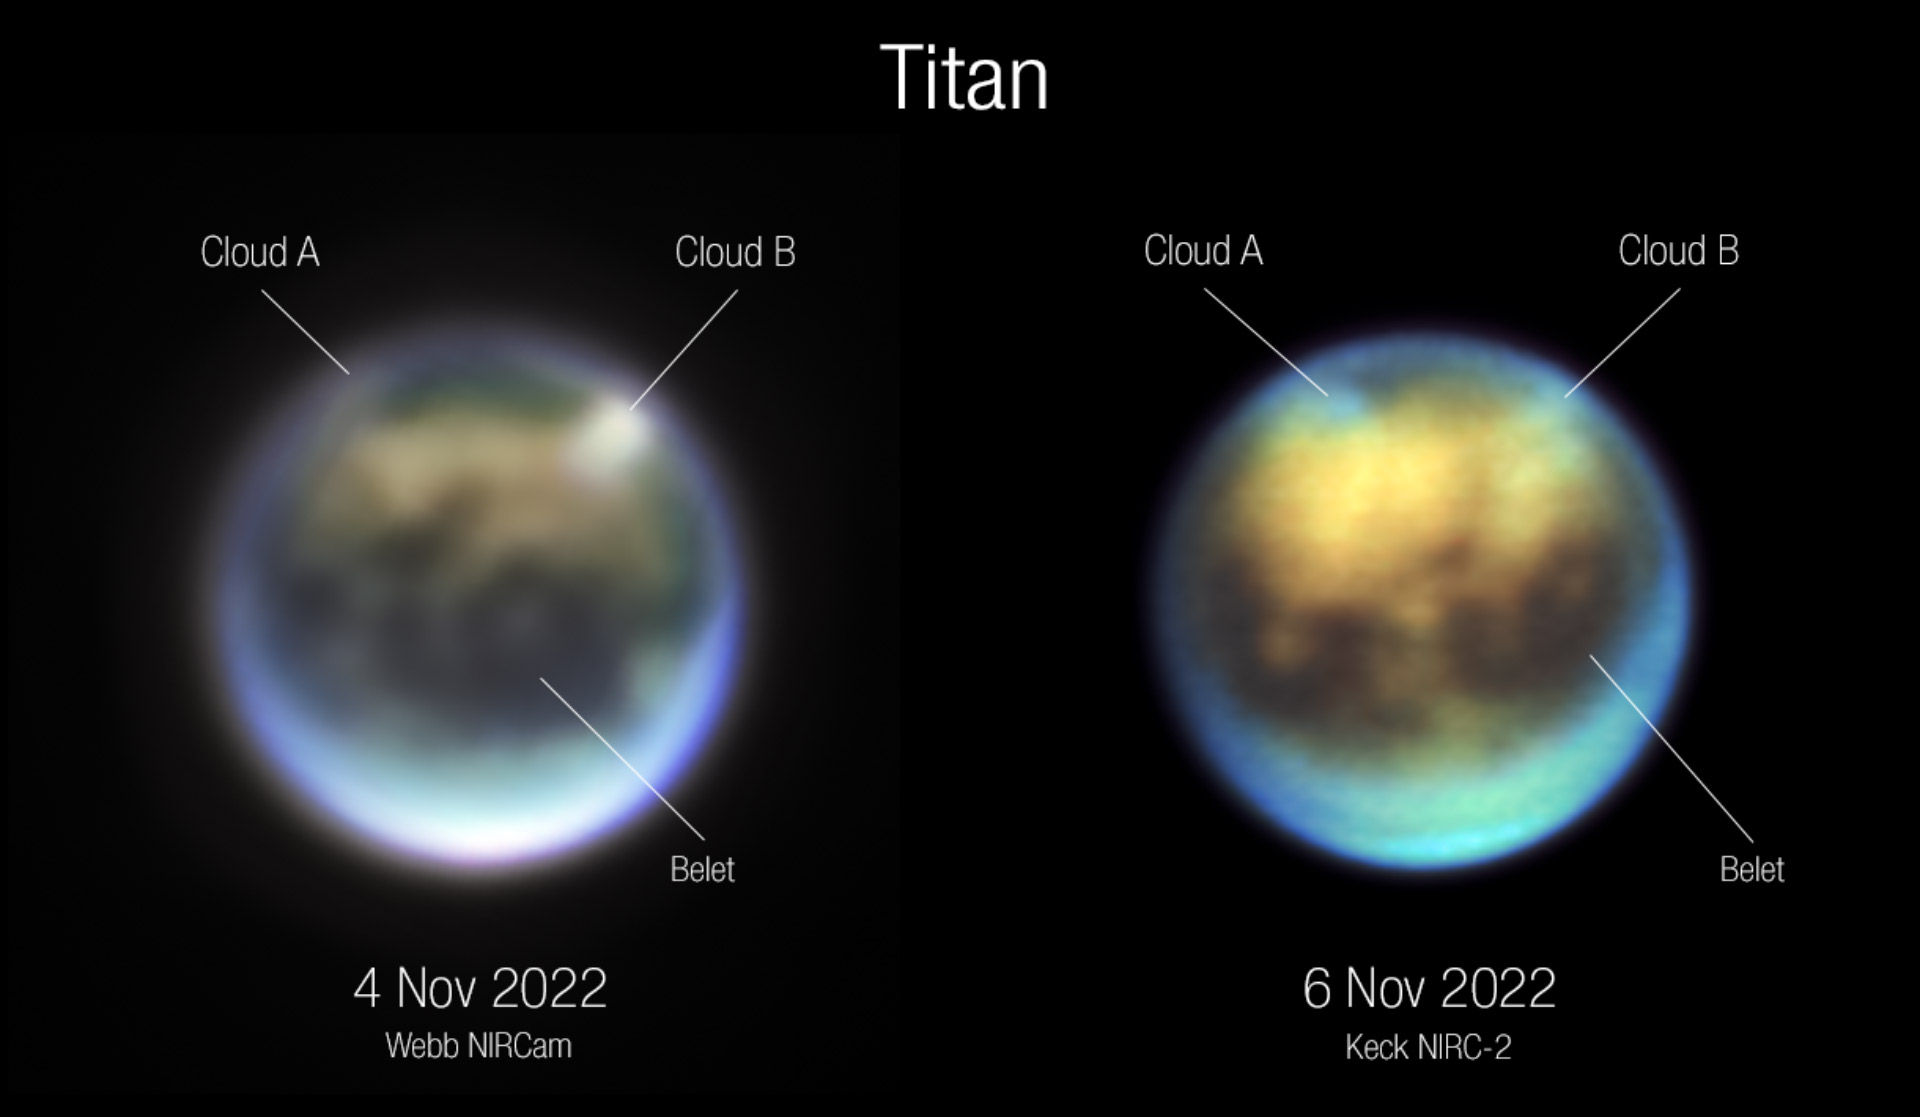 Ontwikkeling van de wolken op Titan gedurende 30 uur tussen 4 en 6 november 2022